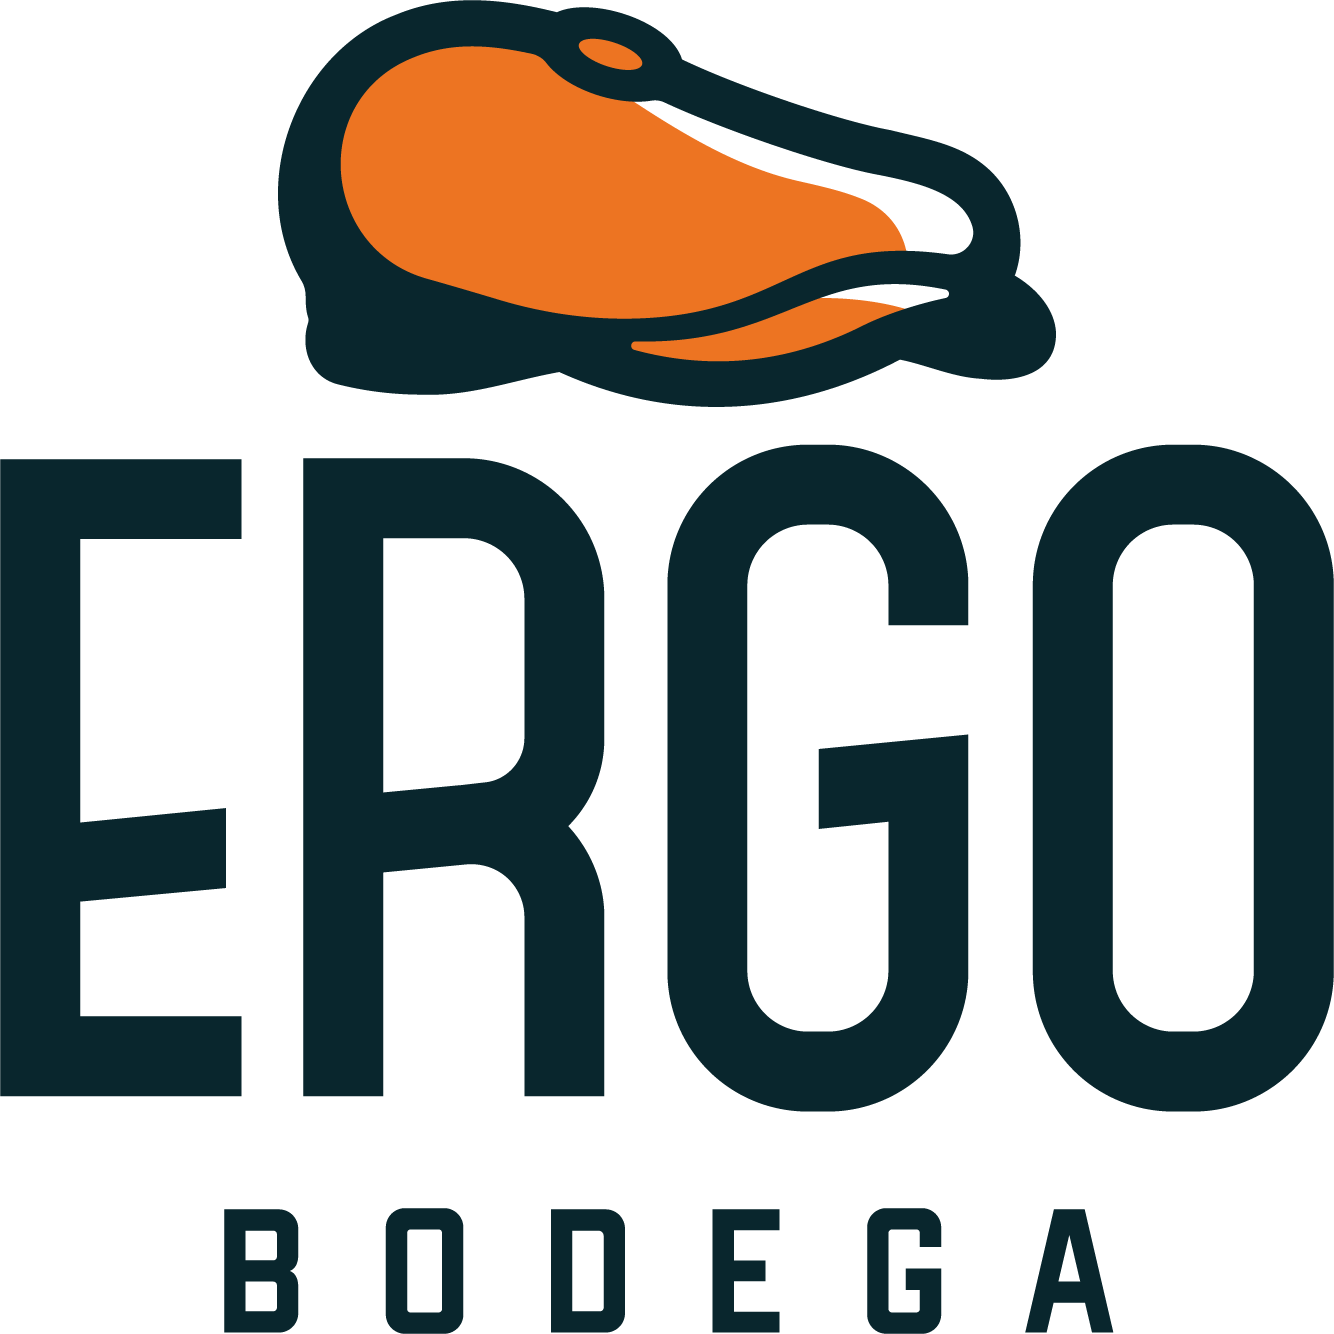 Bodega Ergo-Cervezas independiente y Sidras